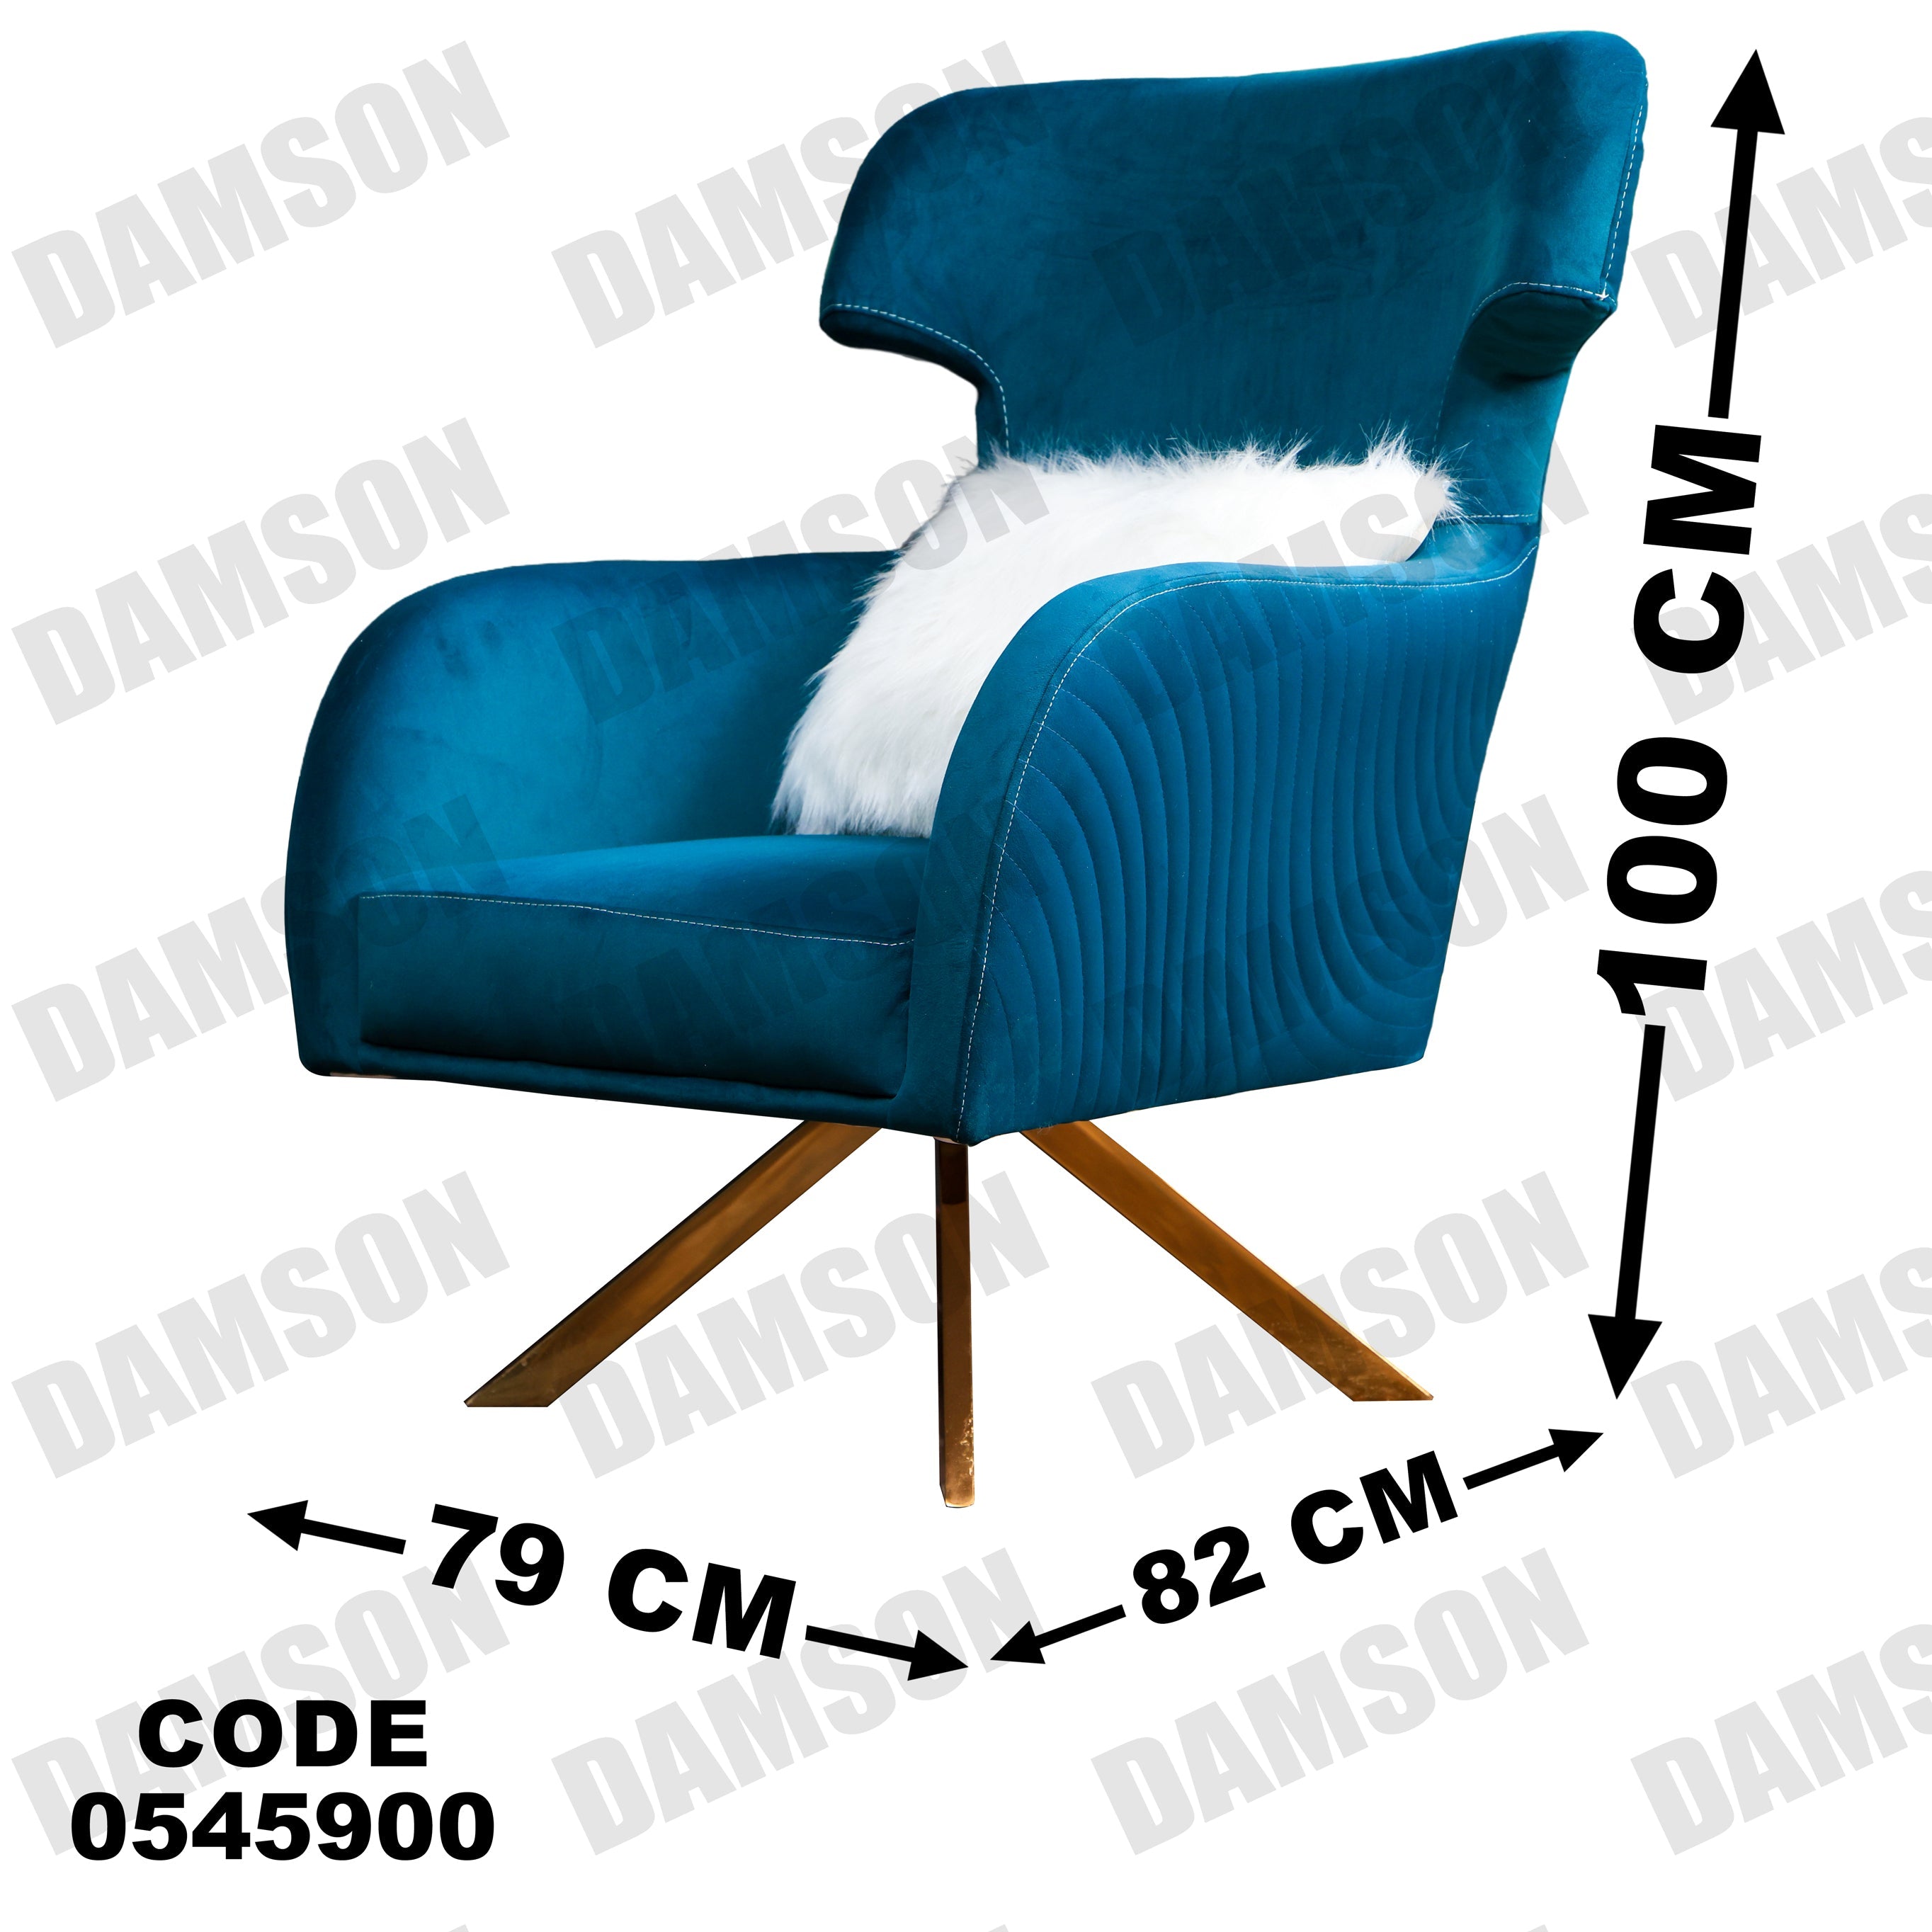 فوتية 1-459 - Damson Furnitureفوتية 1-459